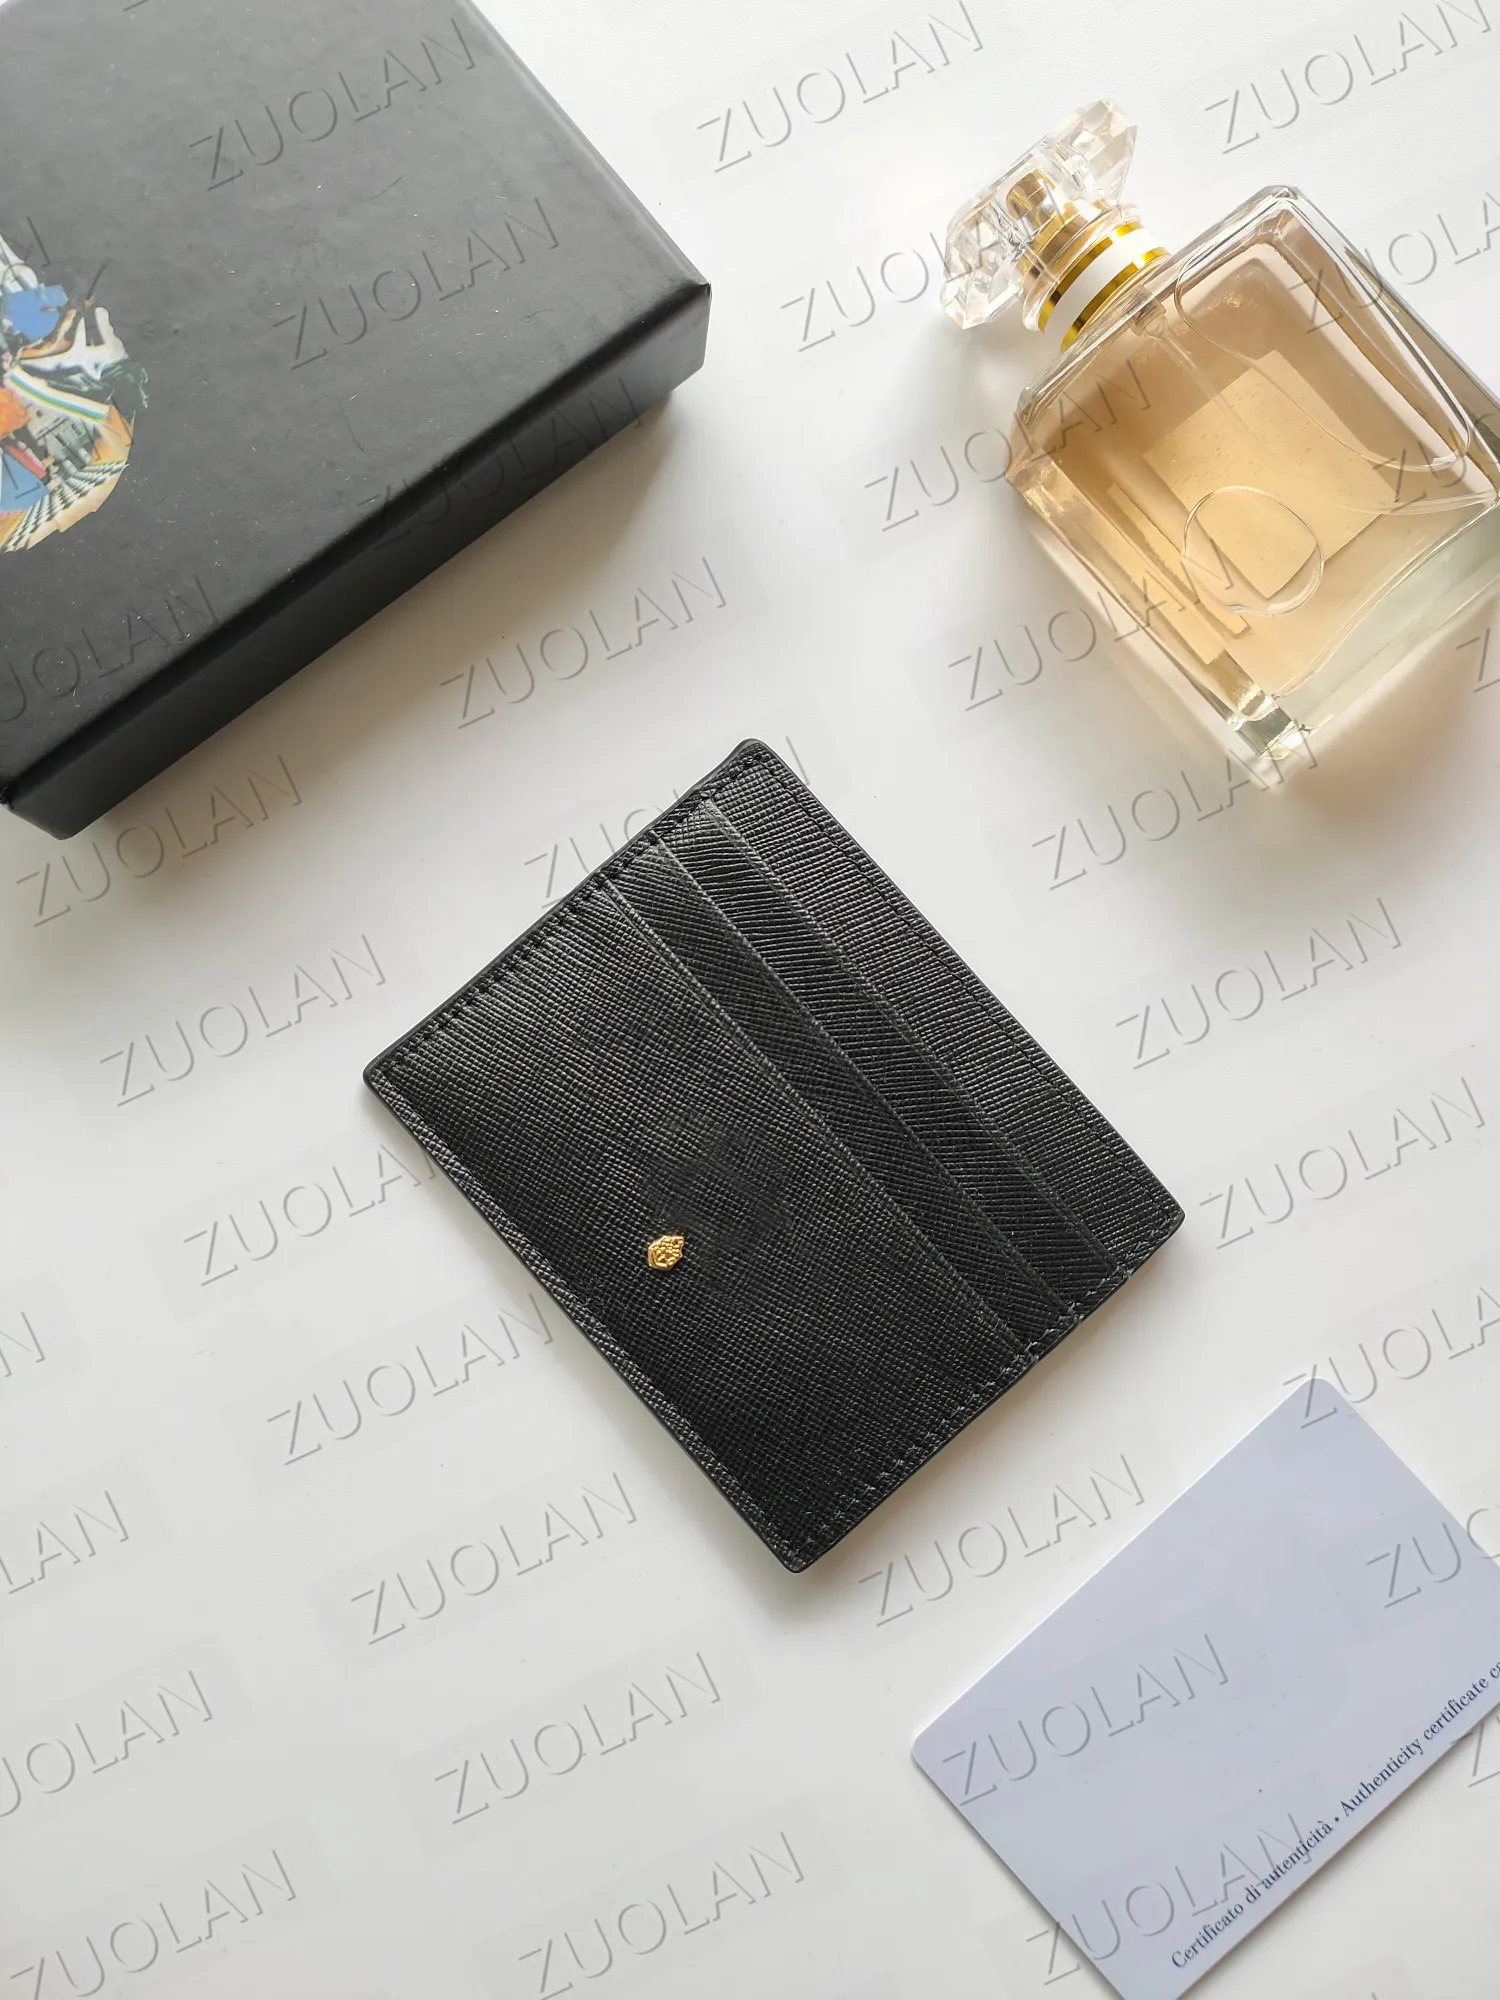 Designers Bolsa de cartão com caixa 2MC223 Bolsa de captação real vender os estilos mais recentes - CHIDA DE LISTRA TEMPLOTE TEXTURA 272F